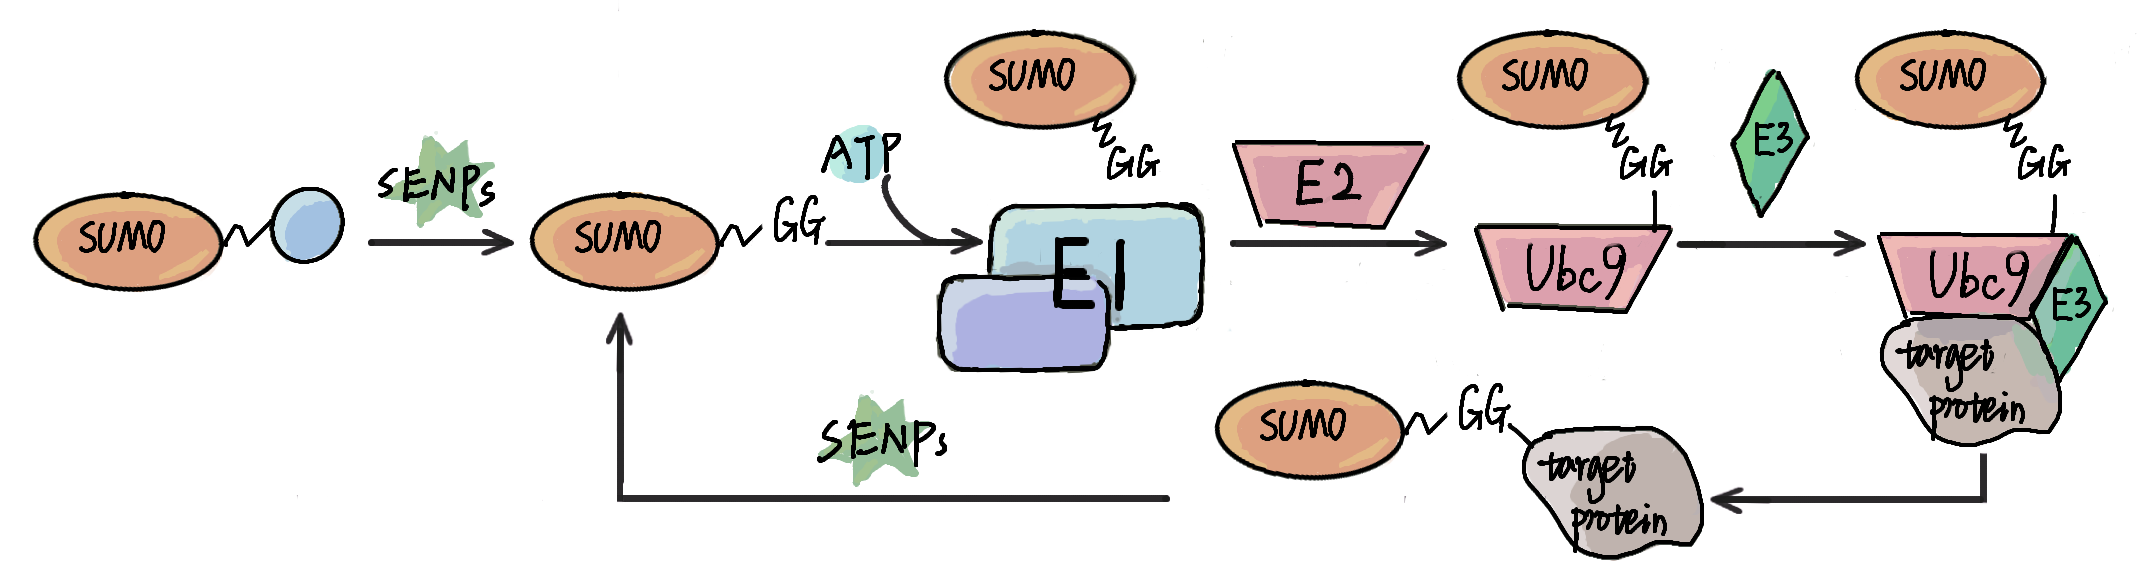 GPS-SUMO: Prediction of SUMOylation SUMO-interacting